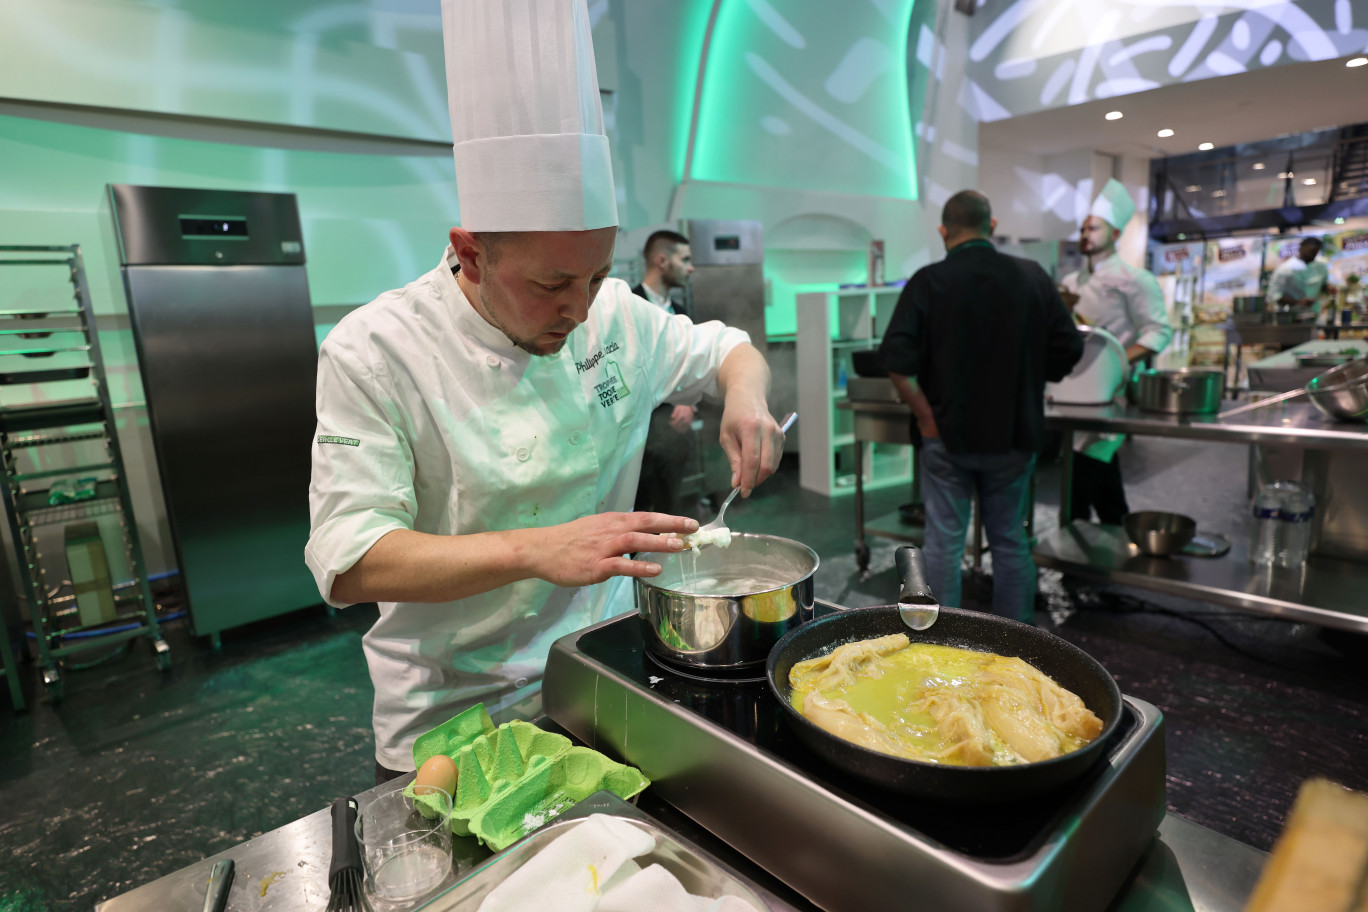 Au trophée Toque verte, le chef cuisinier Philippe Inacio a remporté la 3e place ainsi que le prix d’excellence pour son entrée. (© Toque verte)